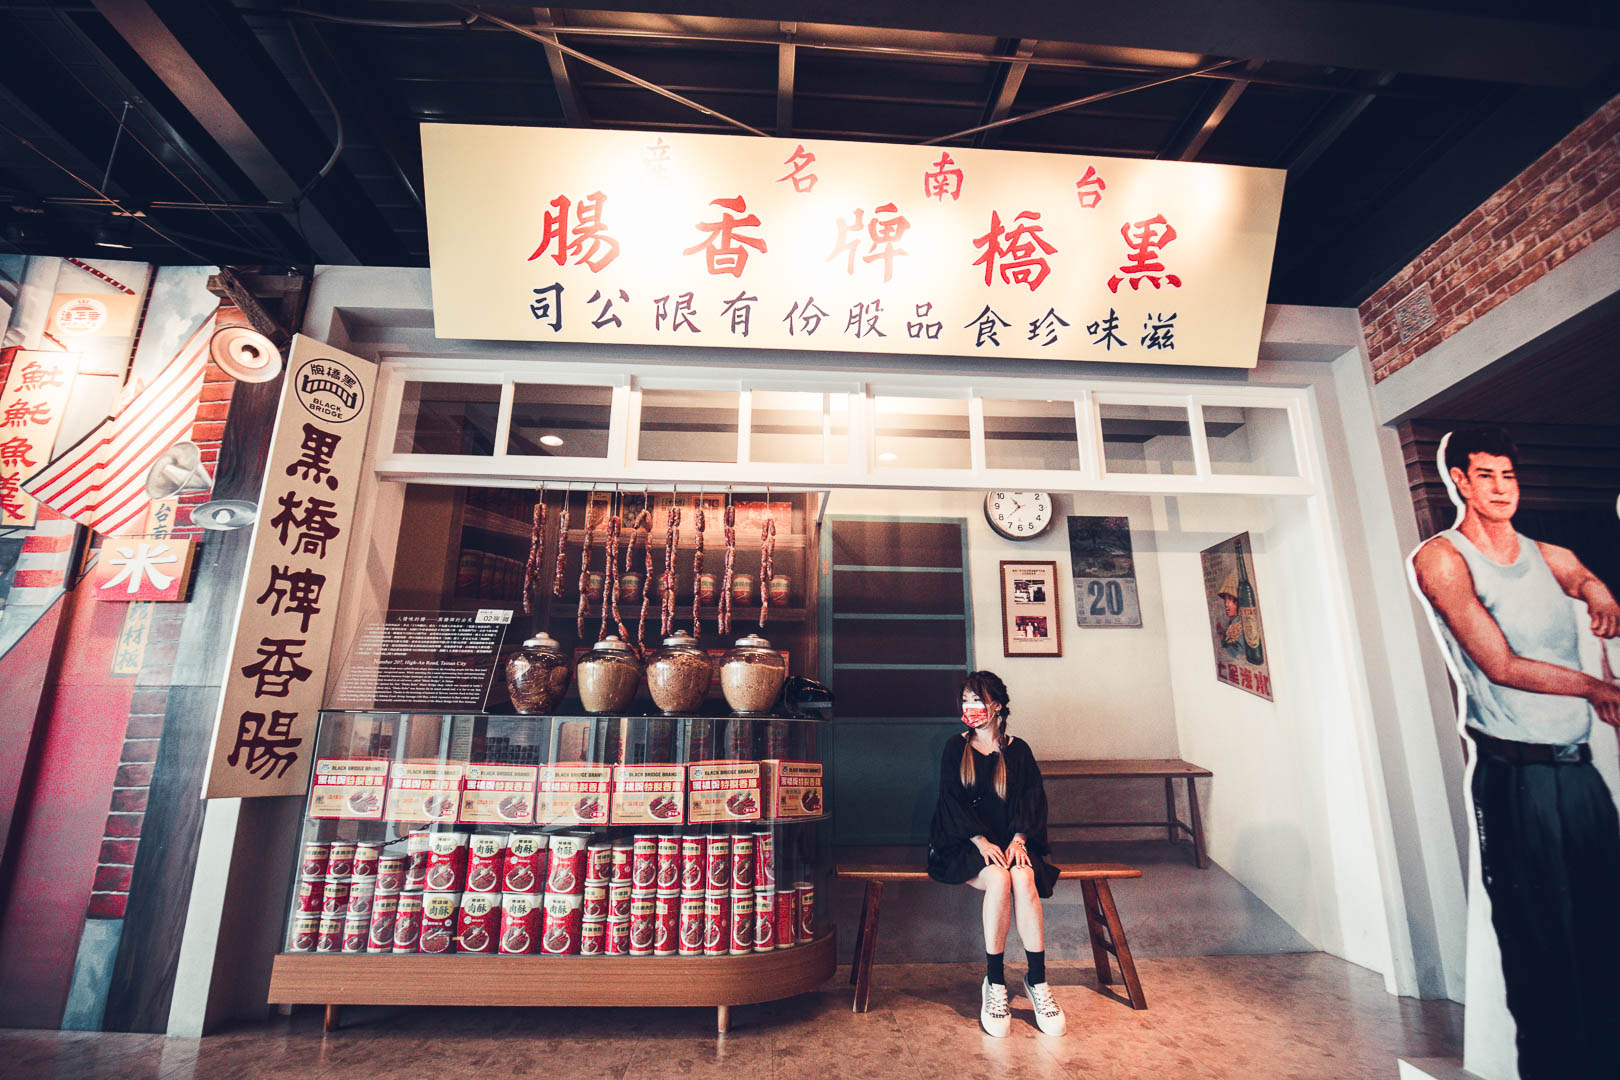 黑橋牌香腸博物館,台南美食,台南景點,台南親子景點,台南博物館,台南香腸博物館,台南市內景點